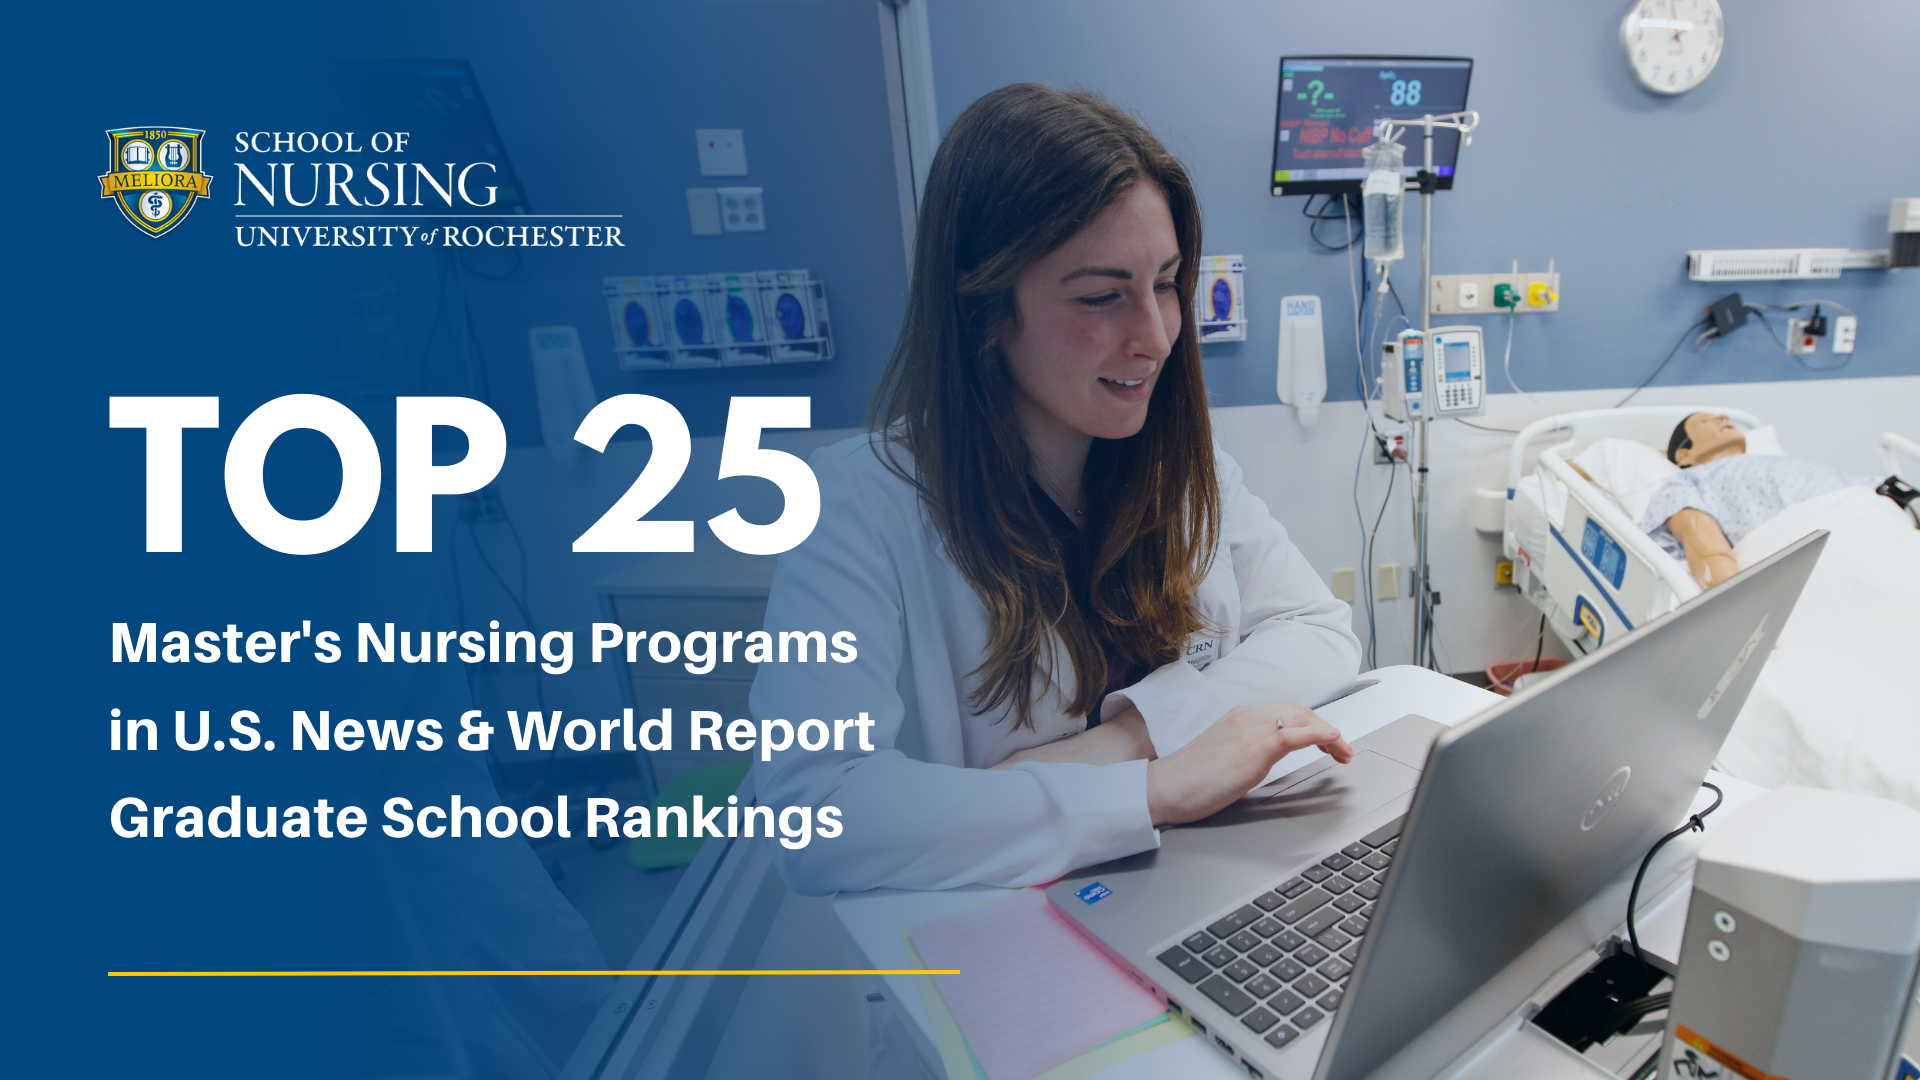 Top 25 Master's in Nursing Programs